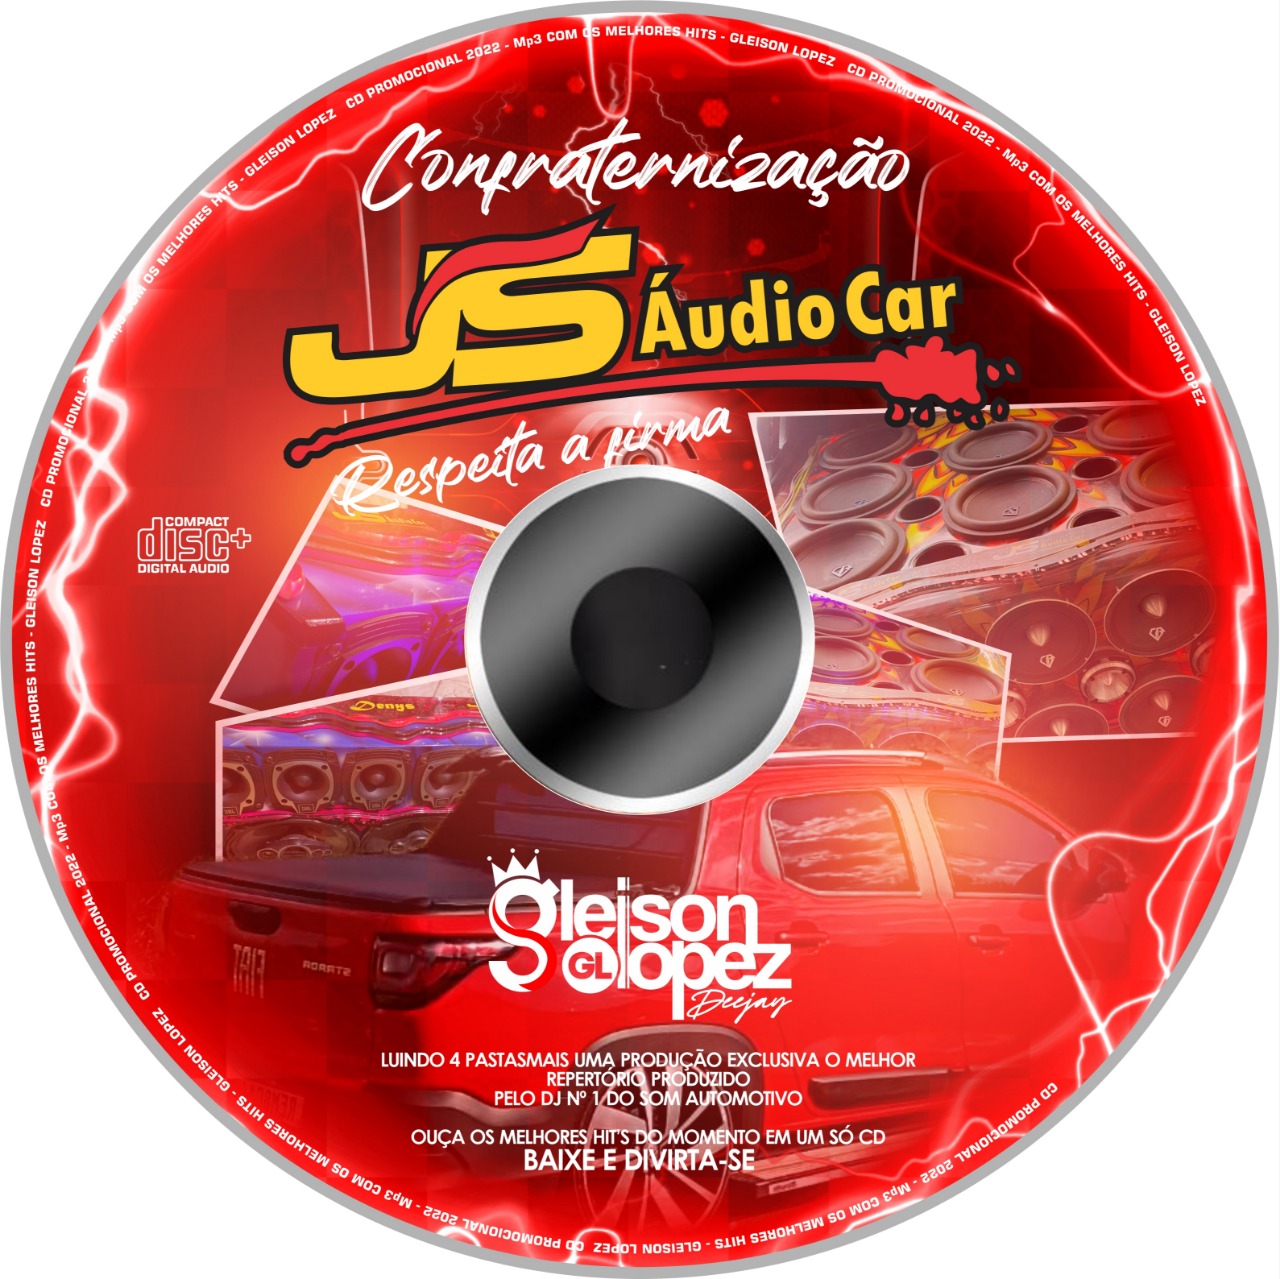 Confra JS AUDIO CAR - 04 Dezembro - Gleison Lopez